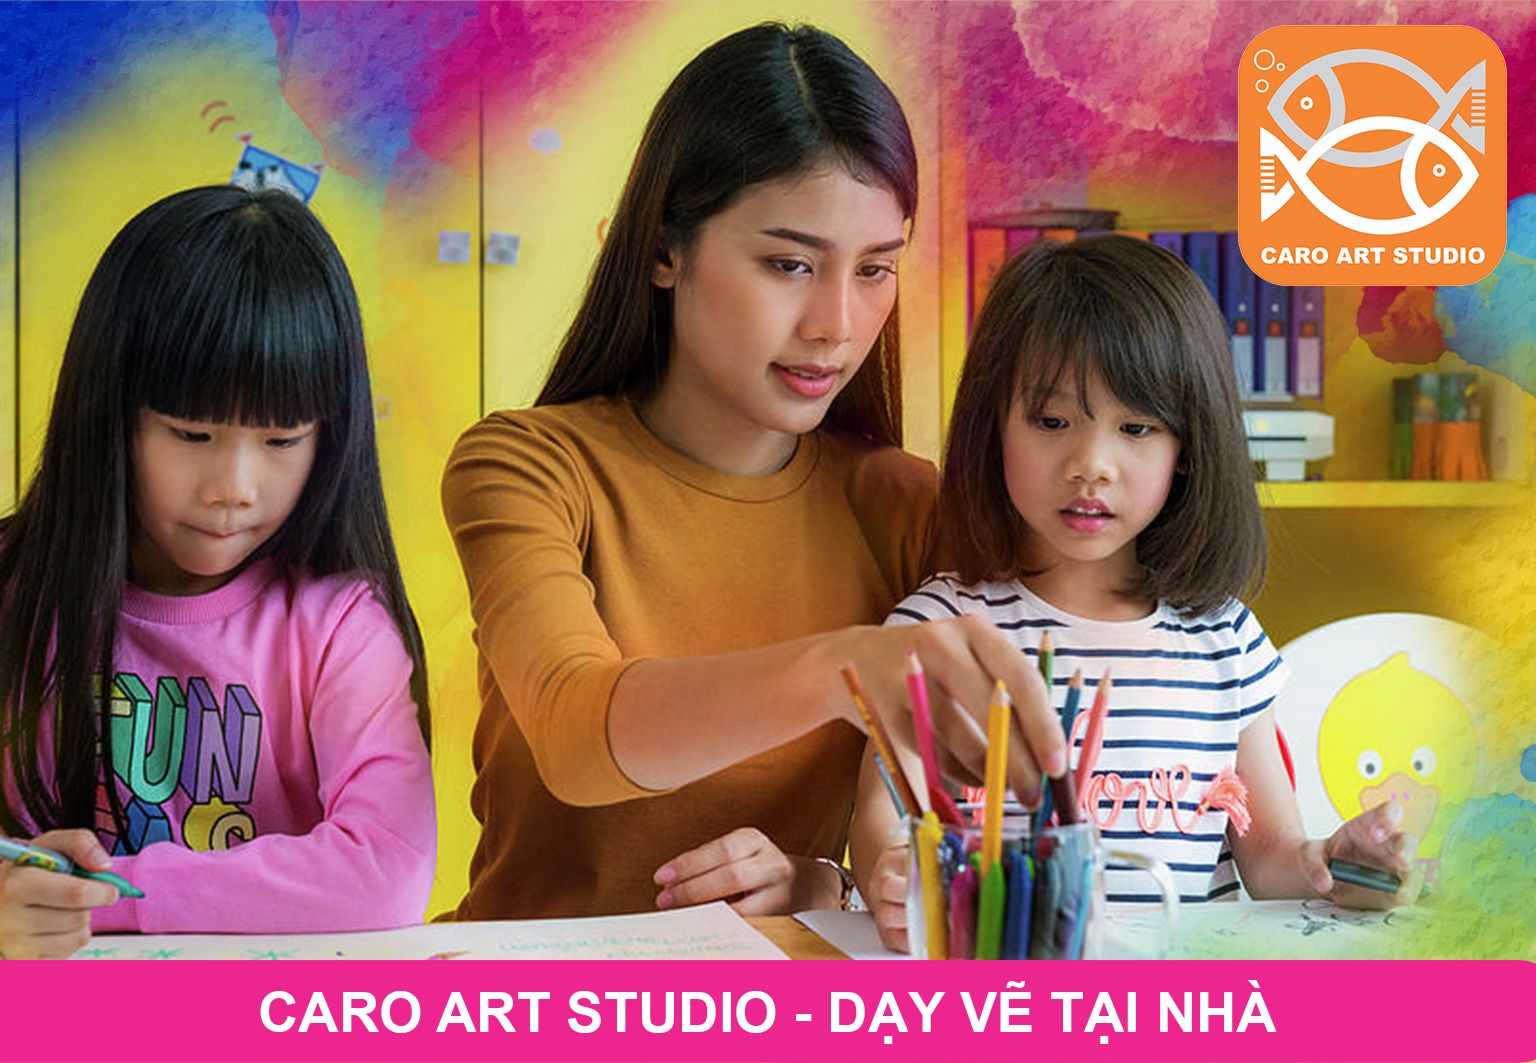 Lớp học vẽ tại nhà Tam Kỳ, Quảng Nam là cơ hội tuyệt vời để bạn tiếp cận với môn học nghệ thuật thú vị này. Hãy cùng gia sư dạy vẽ tài năng của chúng tôi khám phá tài năng của bạn. Nhấn vào ảnh liên quan để biết thêm chi tiết.